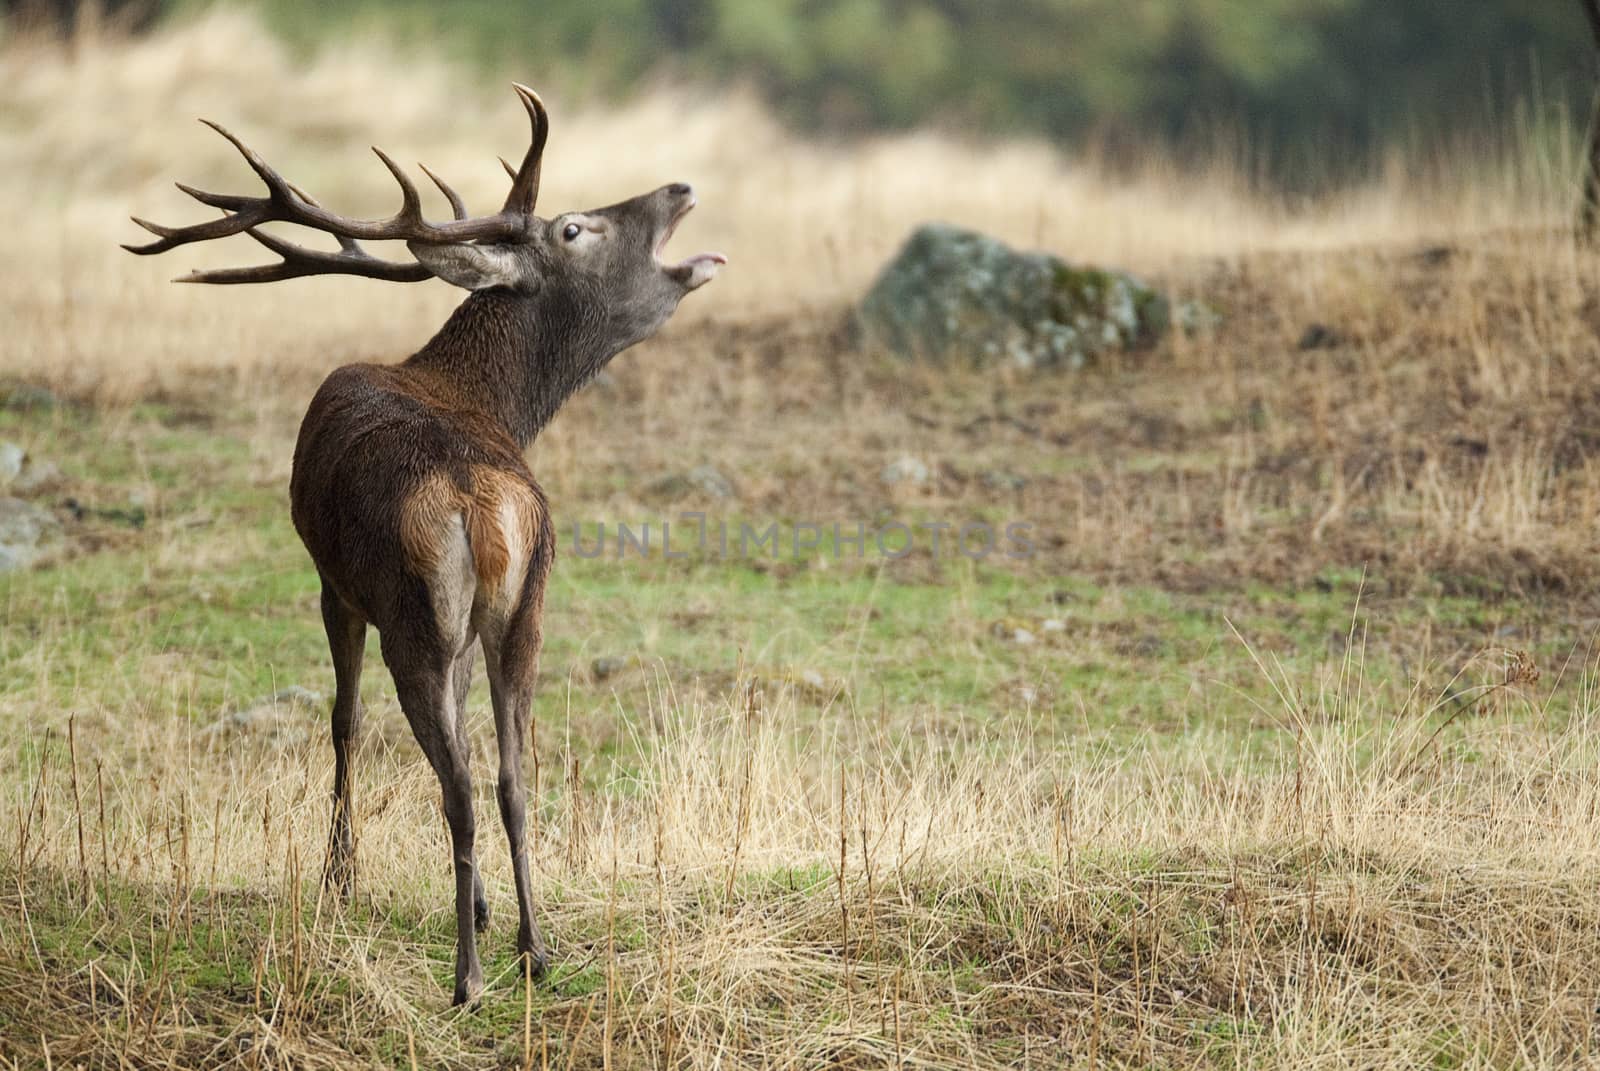 Red Deer, Deers, Cervus elaphus - Rut time, stag, Red deer roari by jalonsohu@gmail.com